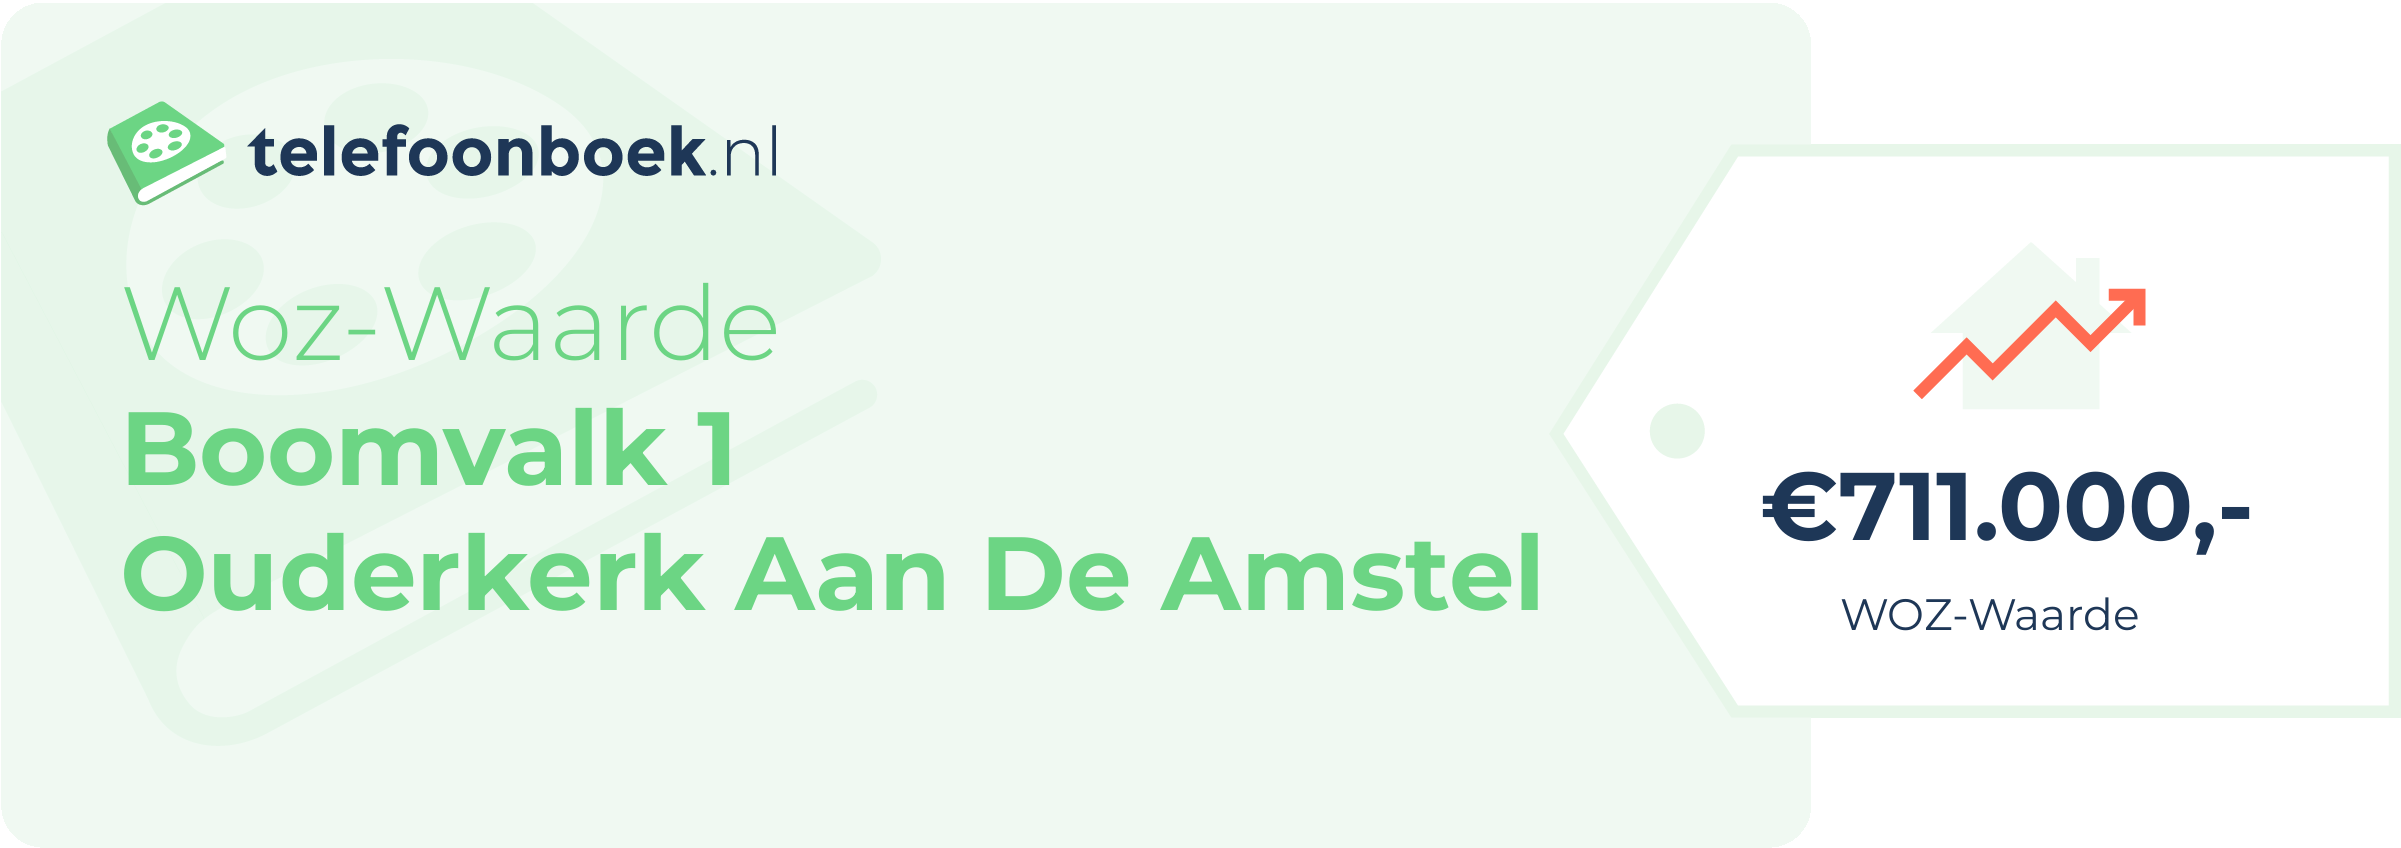 WOZ-waarde Boomvalk 1 Ouderkerk Aan De Amstel